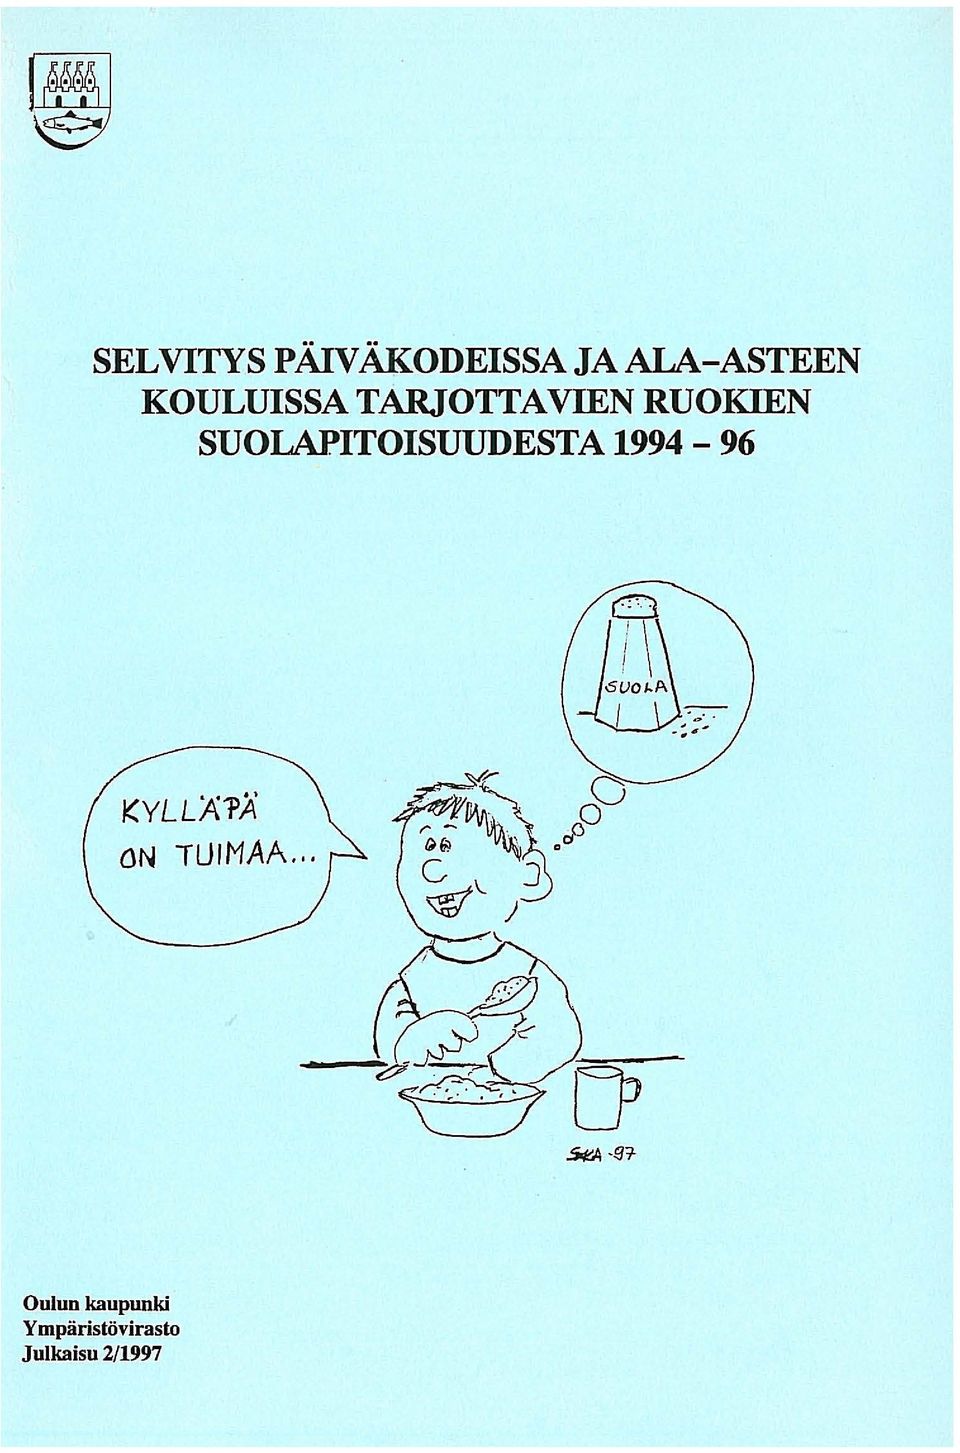 SUOLAPITOISUUDESTA 1994-96 KYLLÄ'PÄ ON